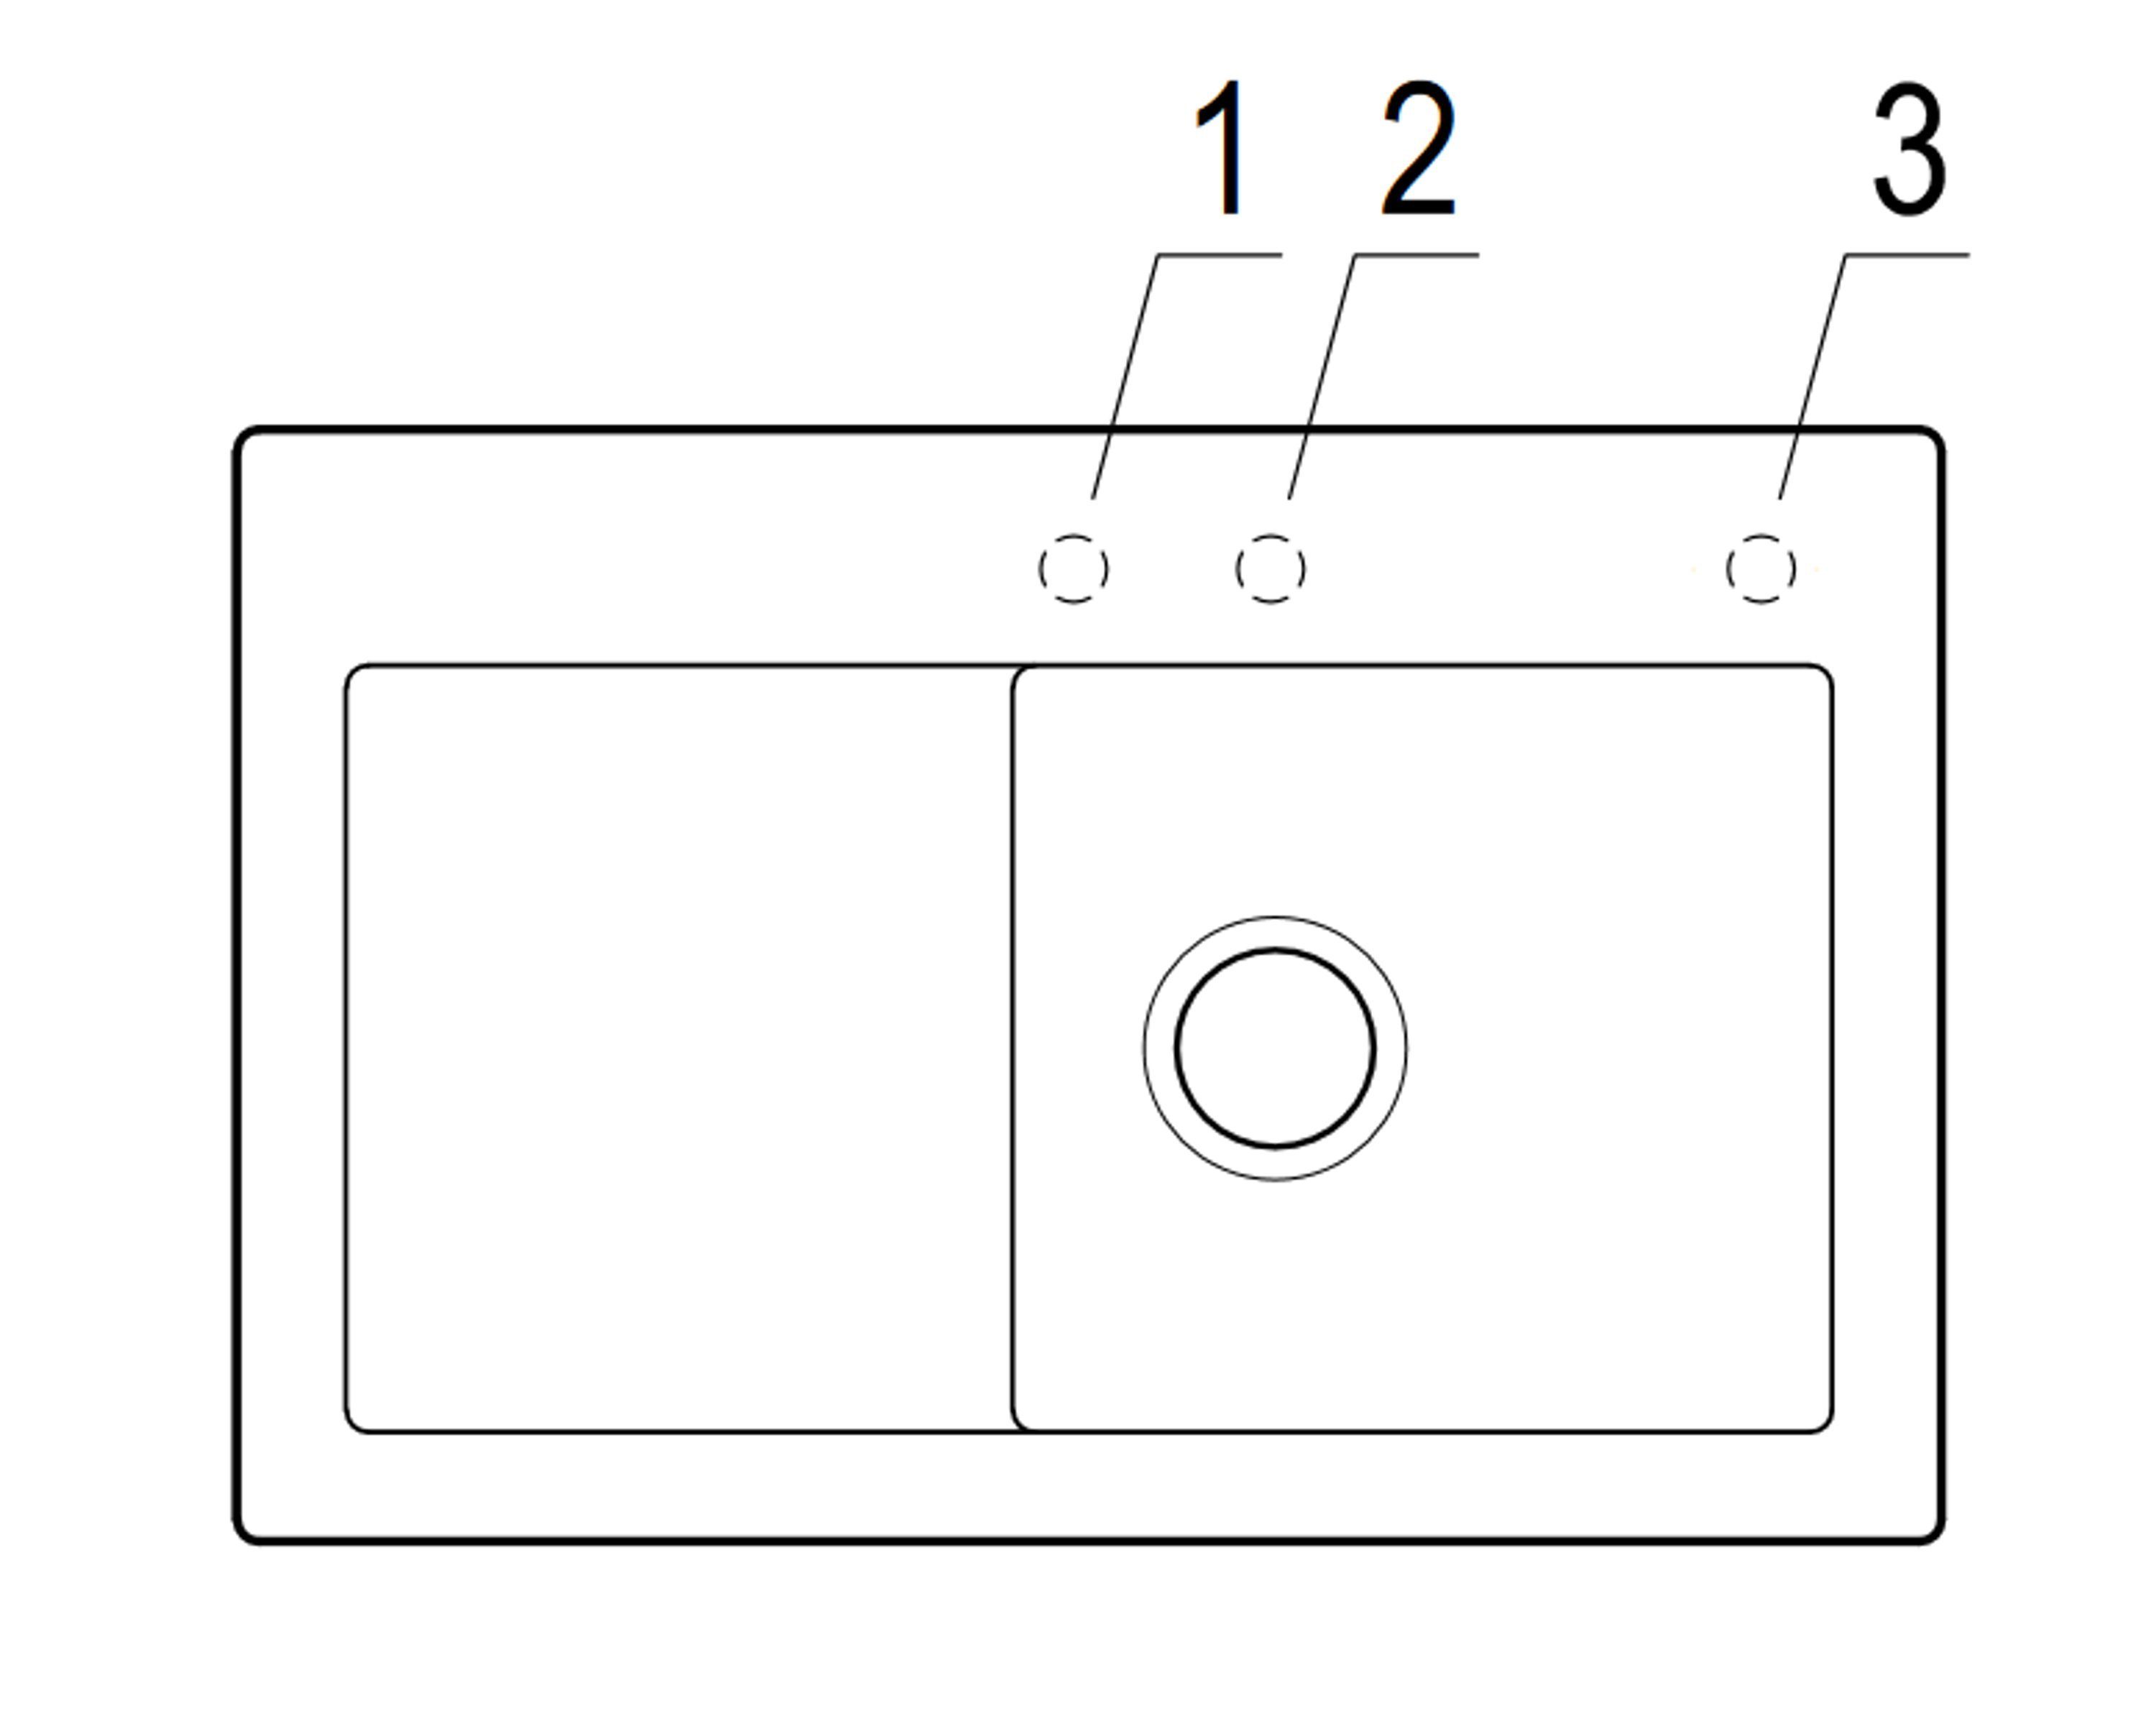 Villeroy & Boch Küchenspüle 6714 74.5/22 rechts Rechteckig, Becken i4, 1F cm, Serie, links und Subway möglich